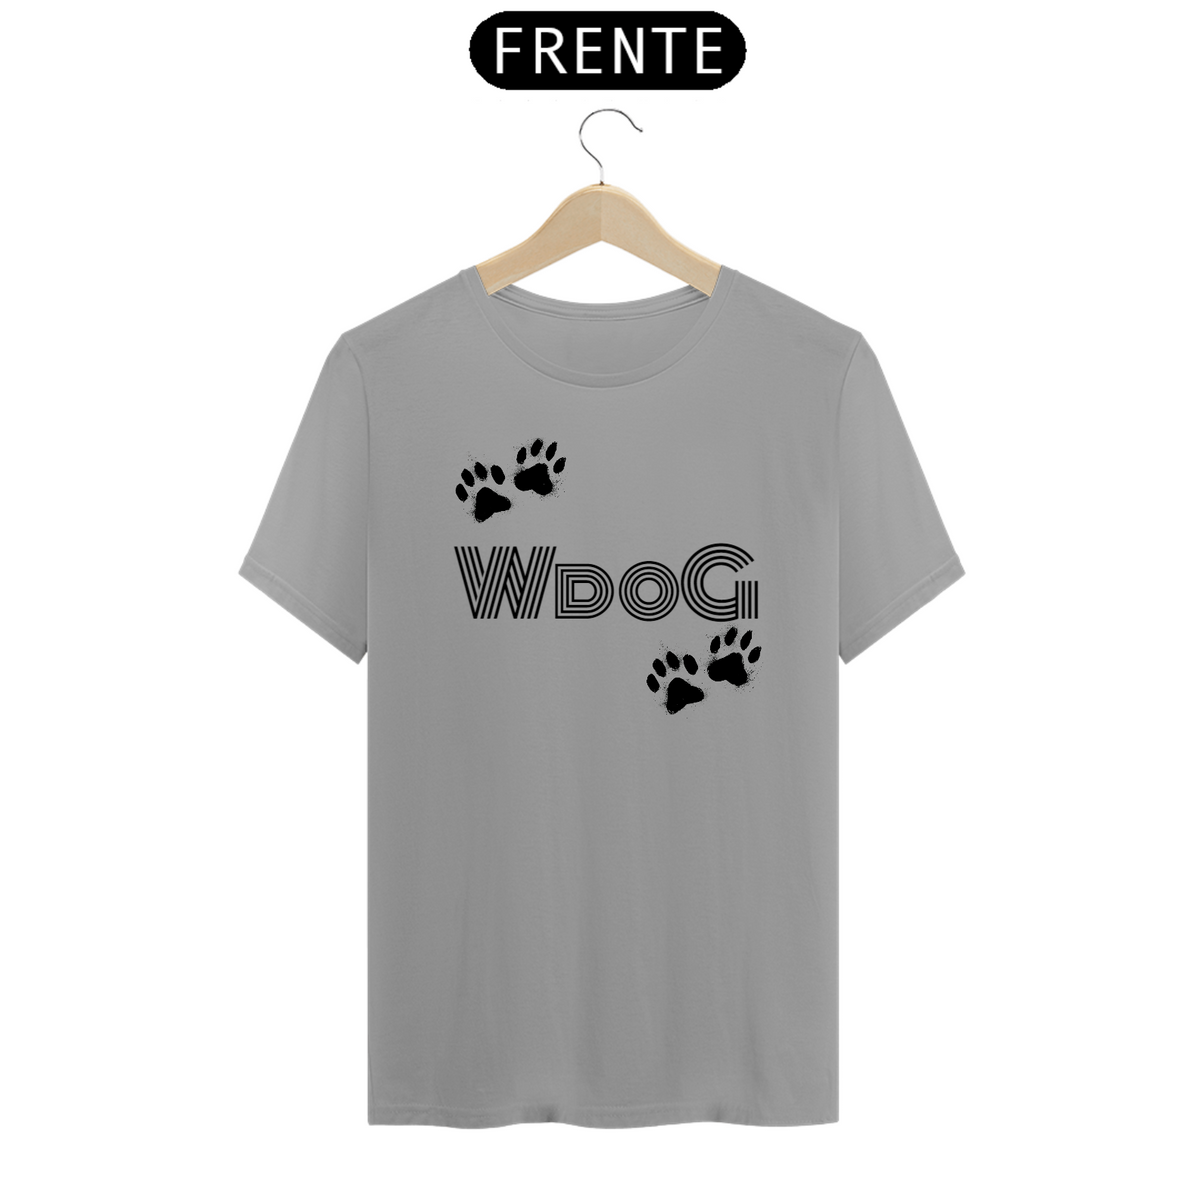 Nome do produto: Camiseta Pegadas WdoG / T-shirt WdoG